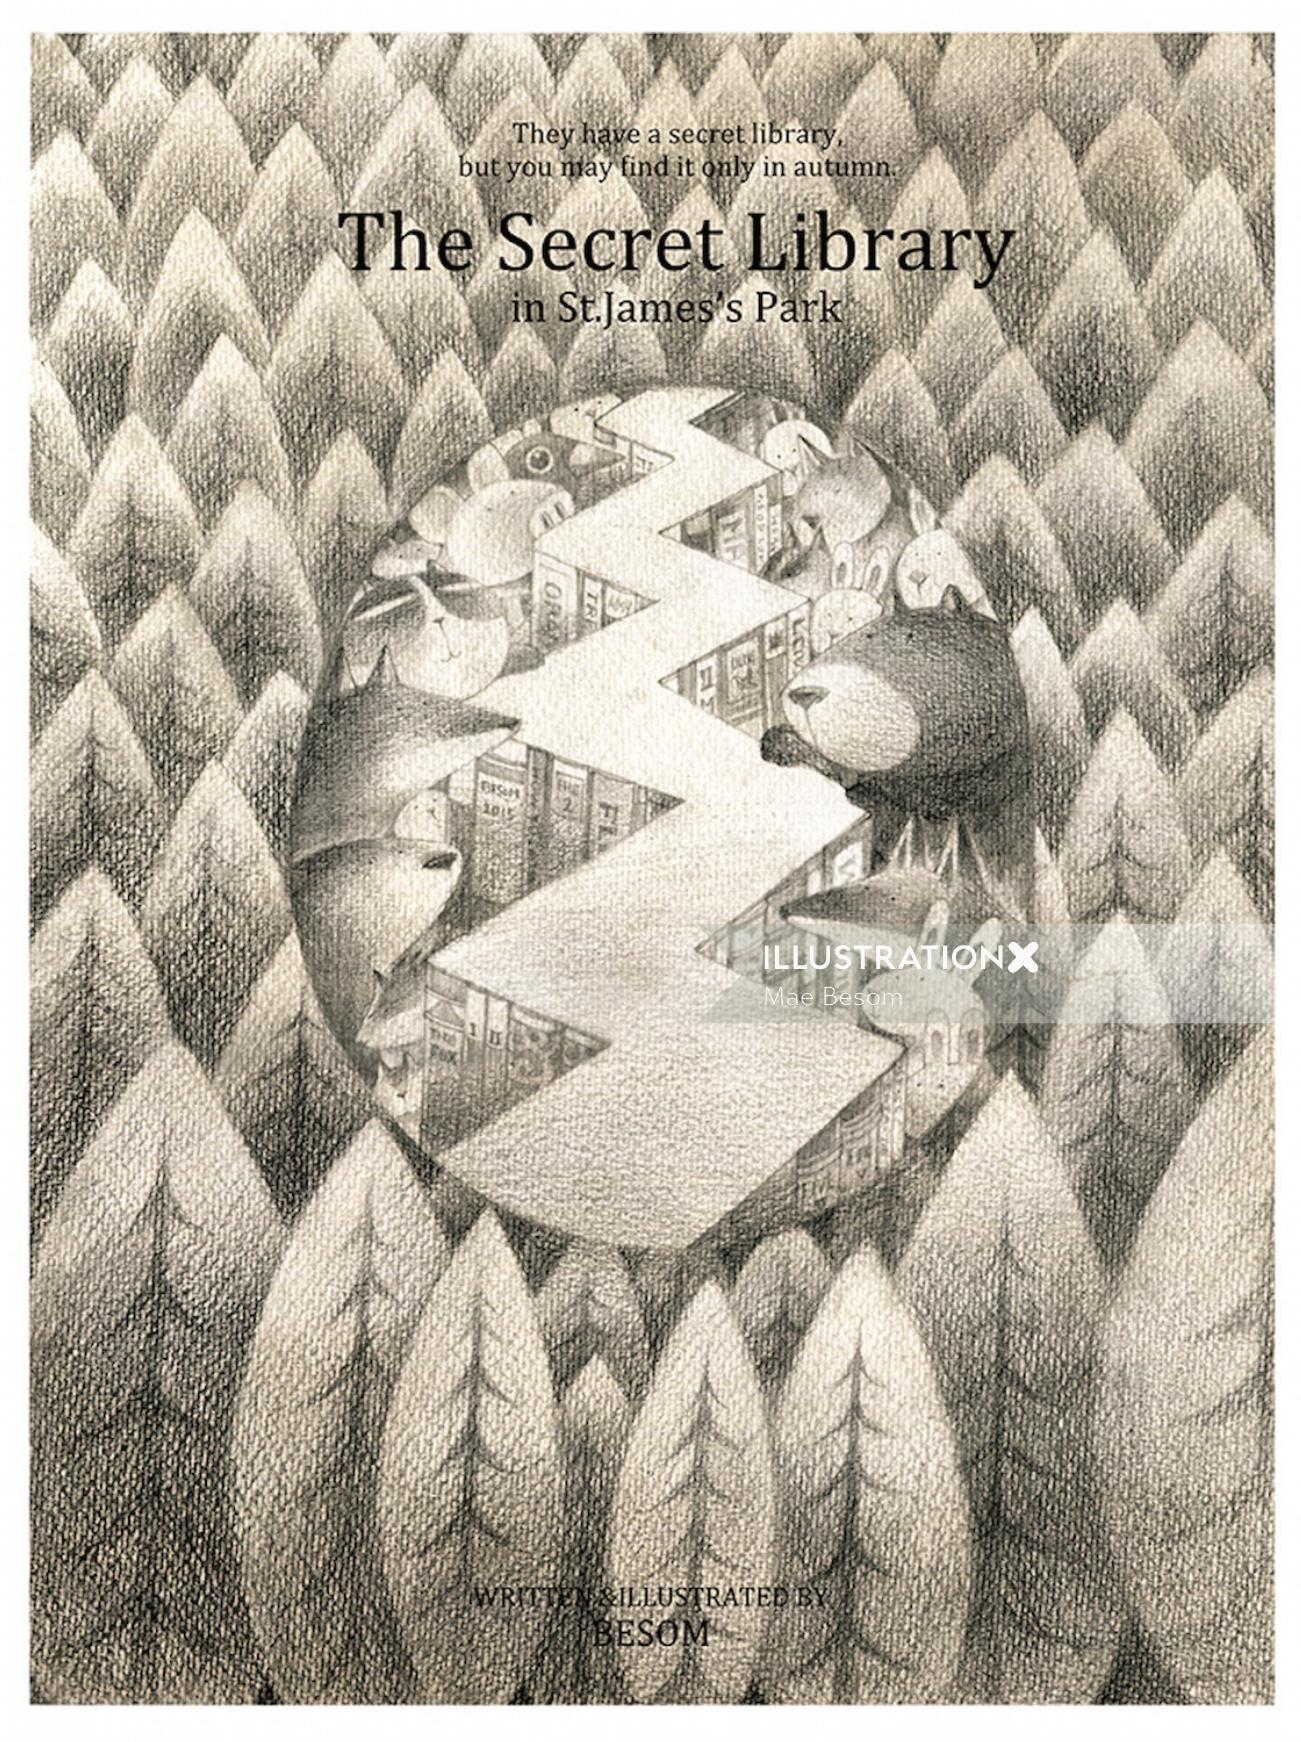 The secret library children illustration
